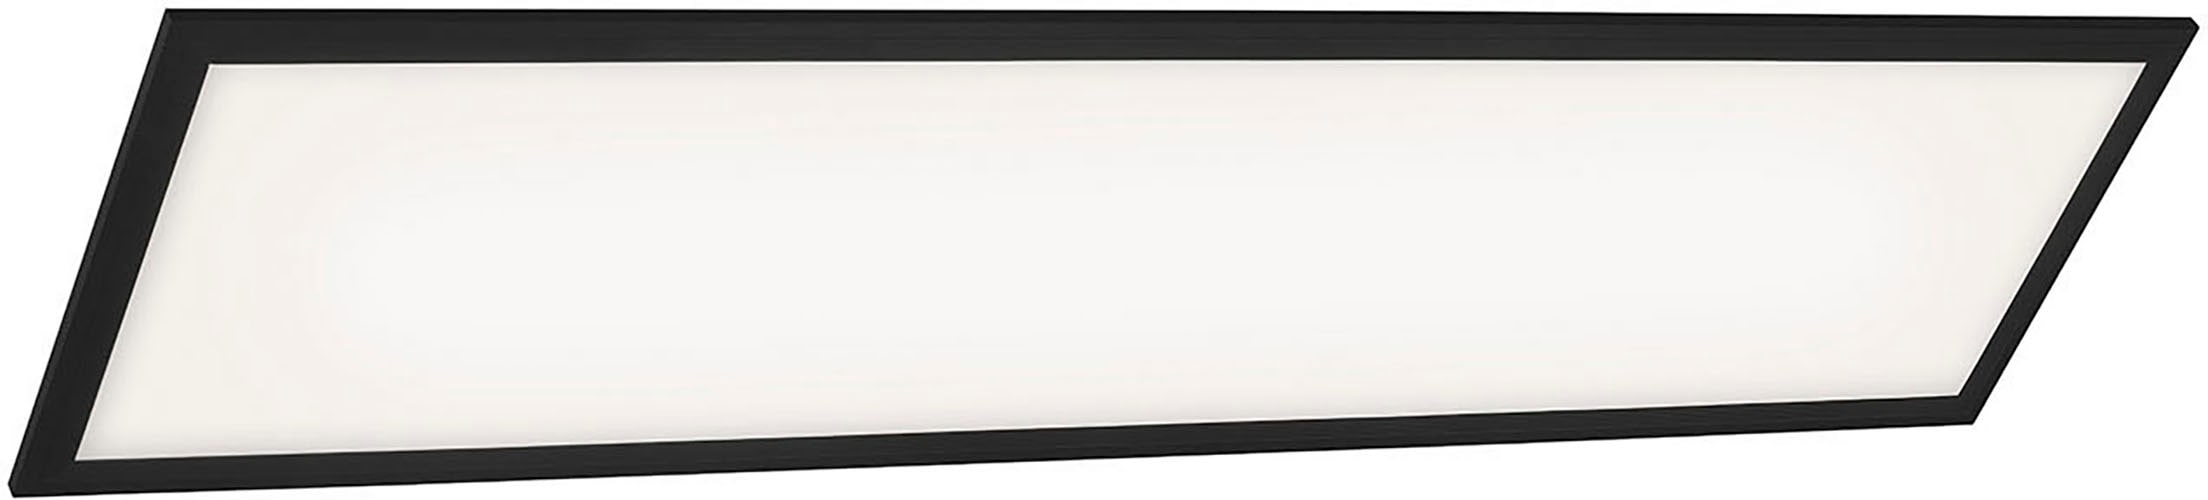 Briloner Leuchten LED Panel »7167015 Piatto«, Deckenlampe, 100x25x6cm, Schwarz, 24W, Wohnzimmer, Schlafzimmer, Flur